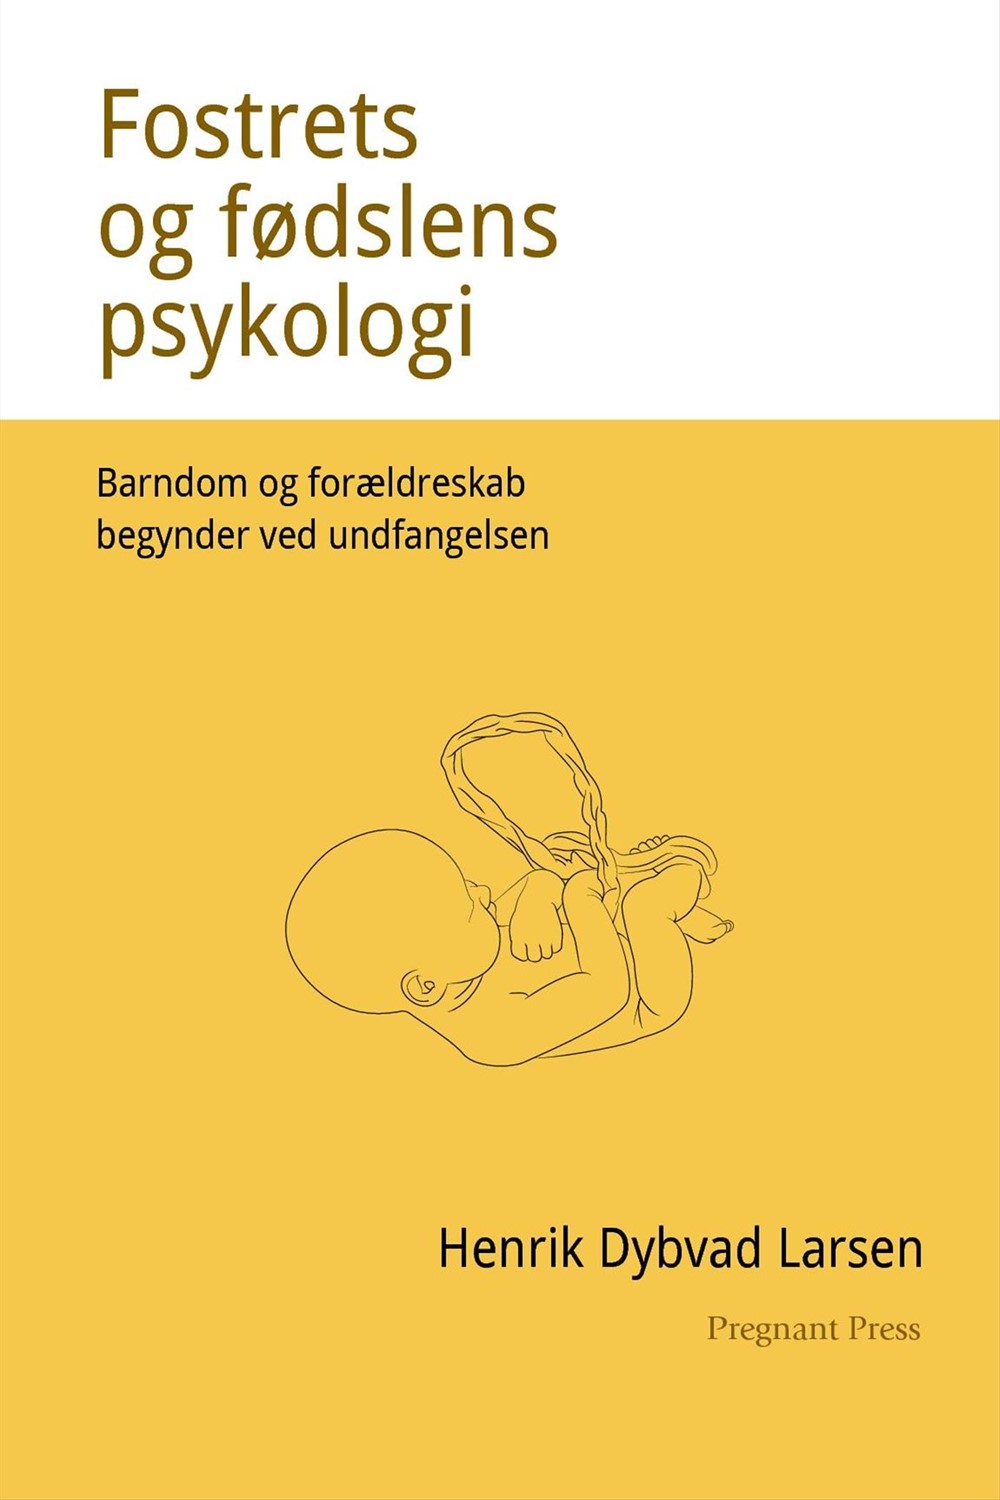 Bog-forside: Henrik Dybvad: Fostrets og fødslens psykologi. Barndom og forældreskab begynder ved undfangelsen